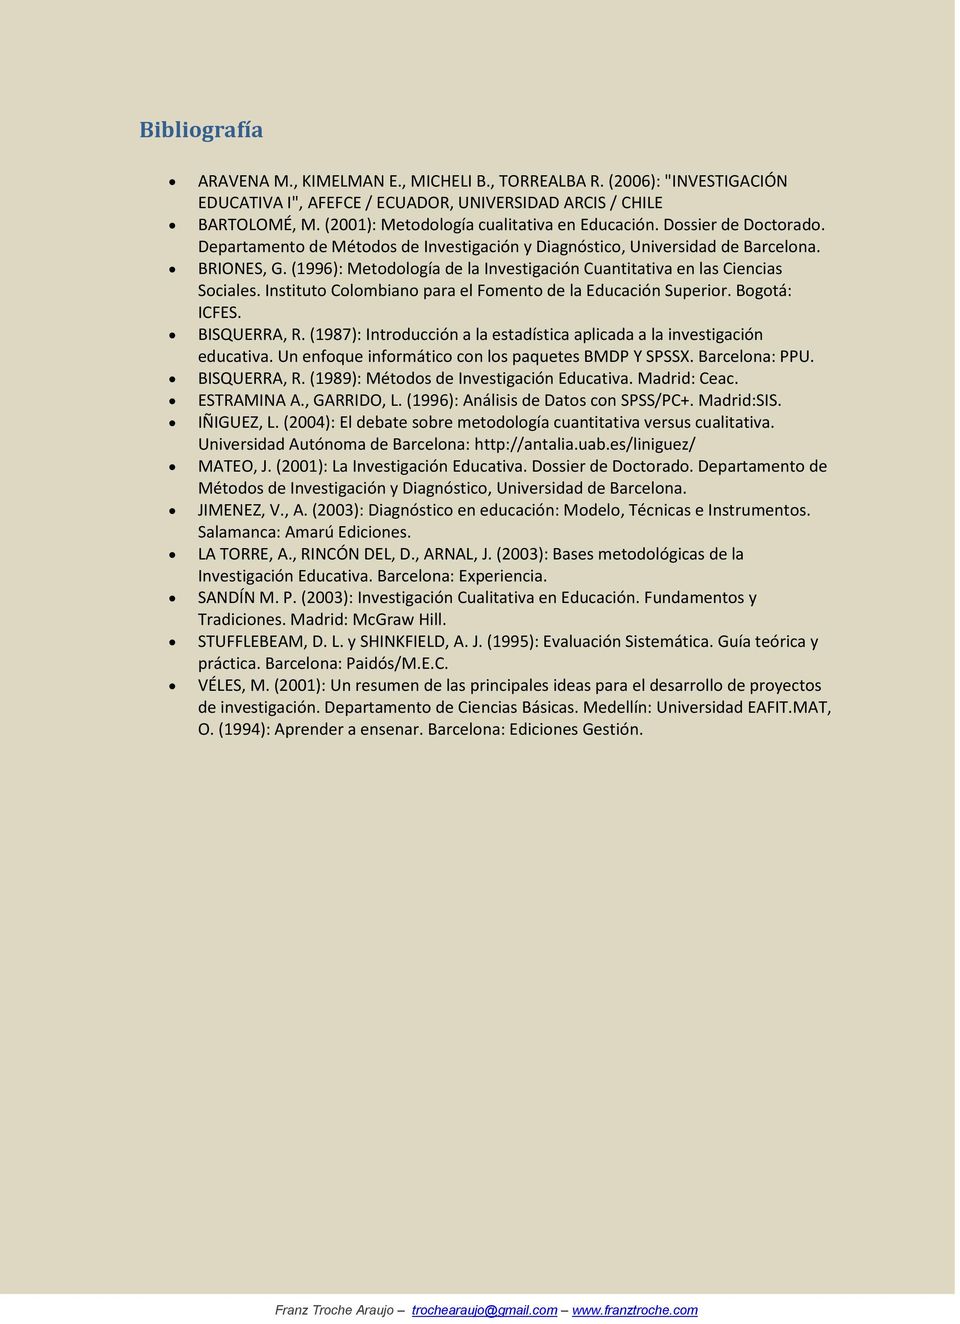 (1996): Metodología de la Investigación Cuantitativa en las Ciencias Sociales. Instituto Colombiano para el Fomento de la Educación Superior. Bogotá: ICFES. BISQUERRA, R.